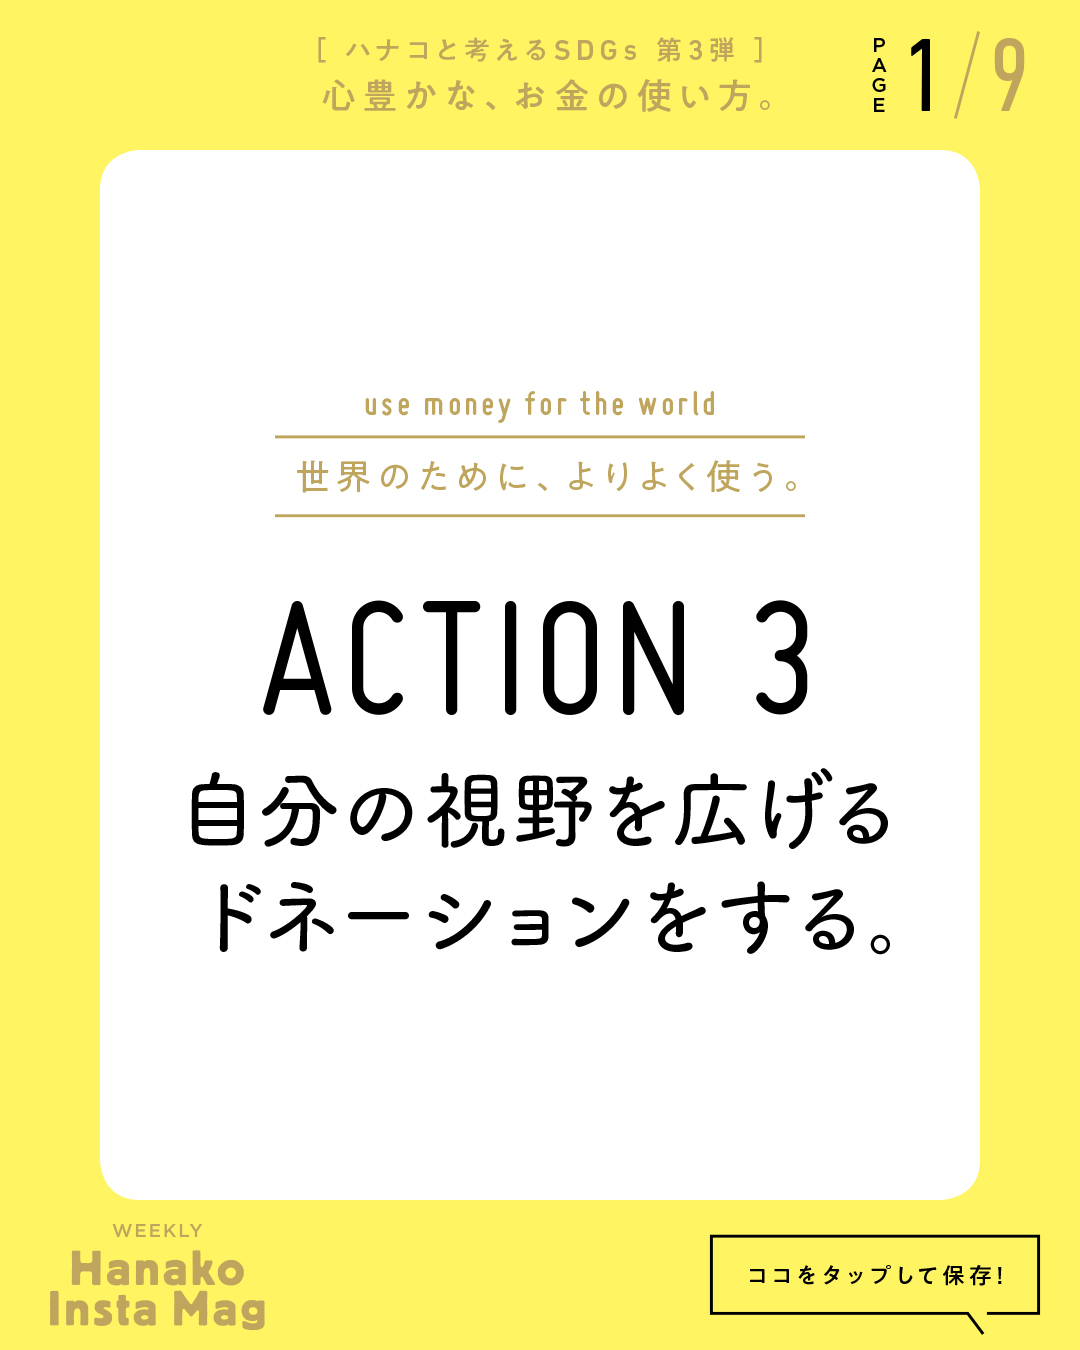 SDGs#3_sekai_action#3-1